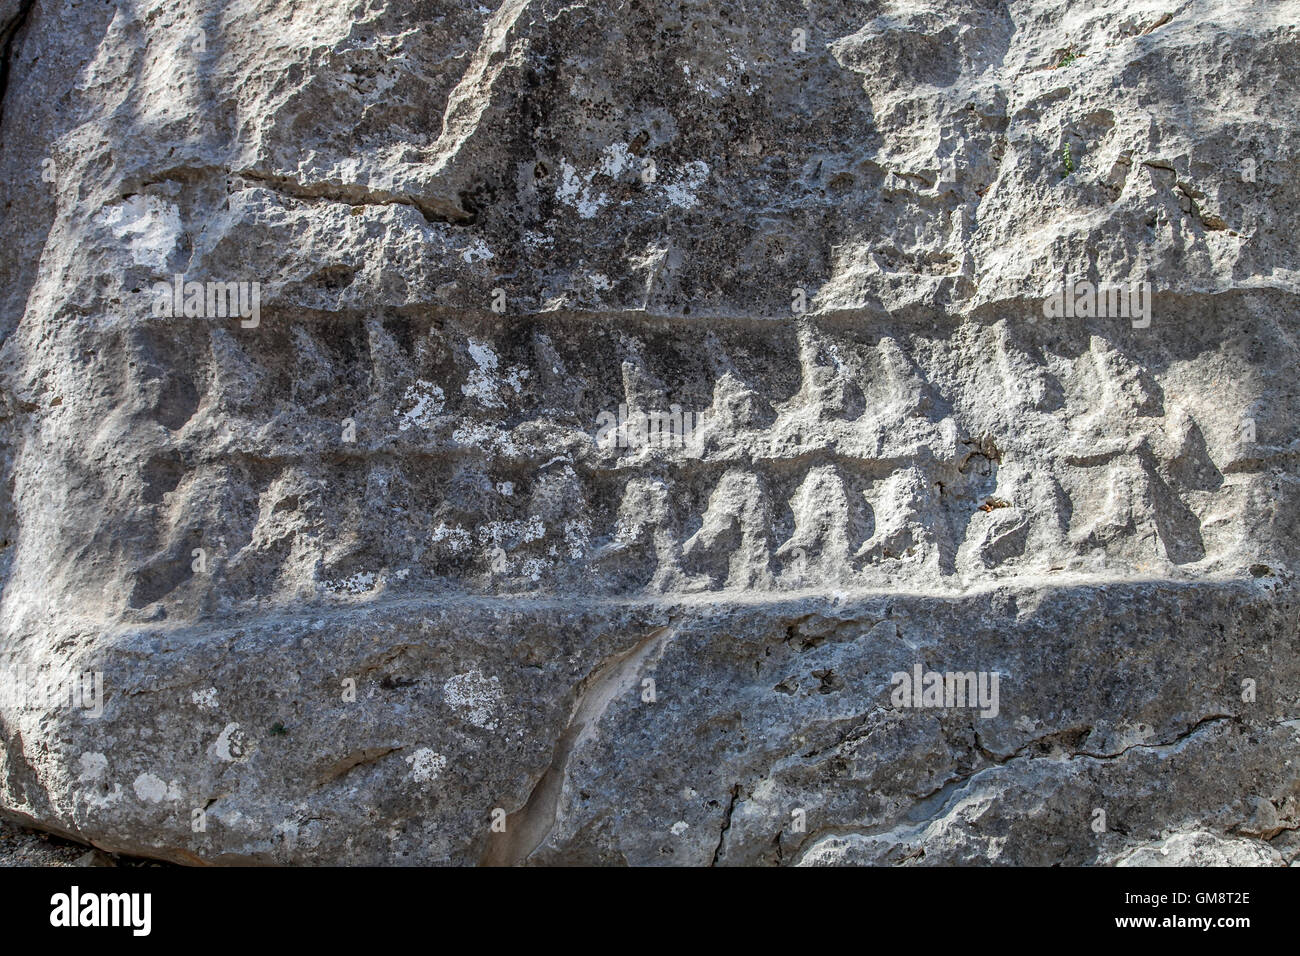 Yazilikkaya, Hittite writings carved into the rock Stock Photo